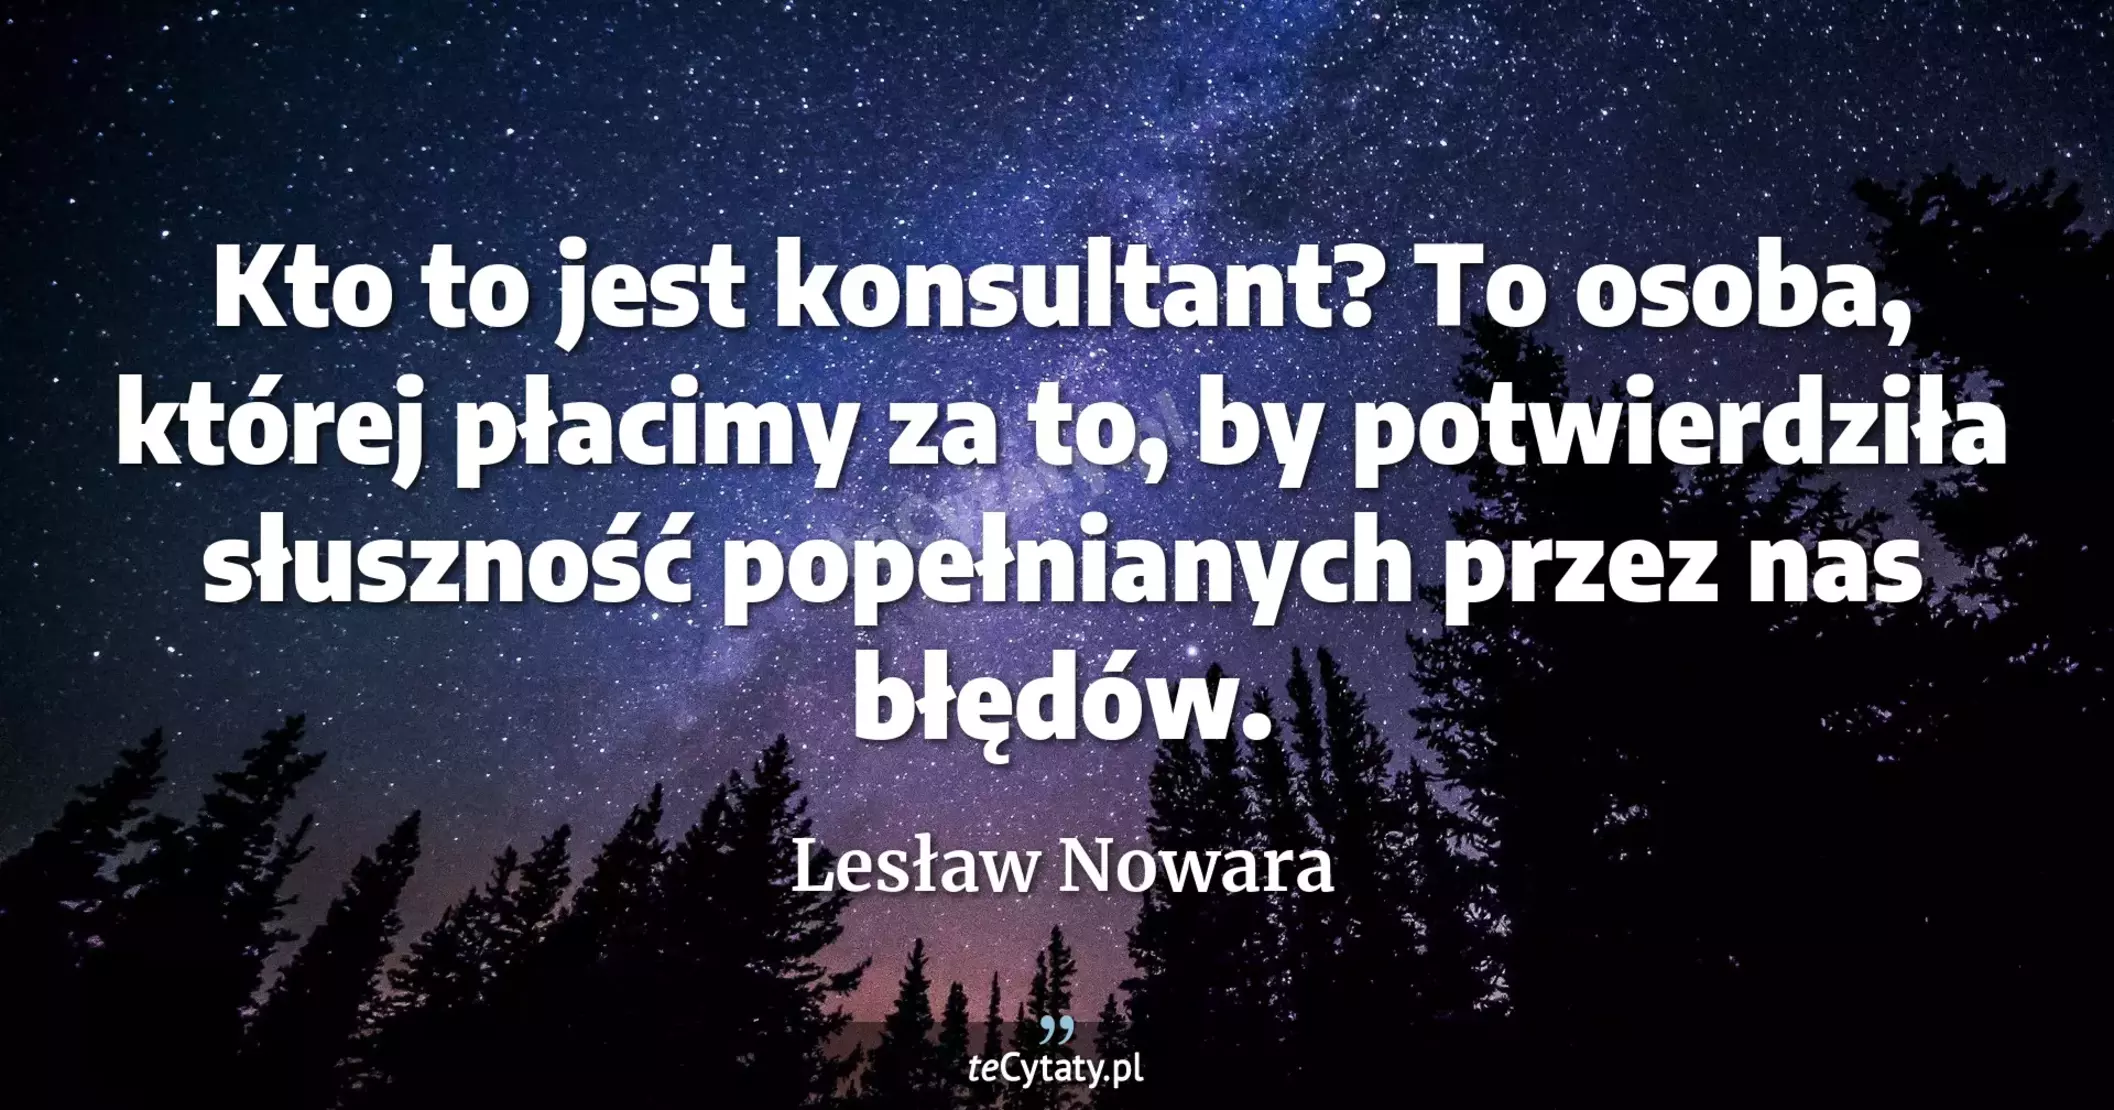 Kto to jest konsultant? To osoba, której płacimy za to, by potwierdziła słuszność popełnianych przez nas błędów. - Lesław Nowara